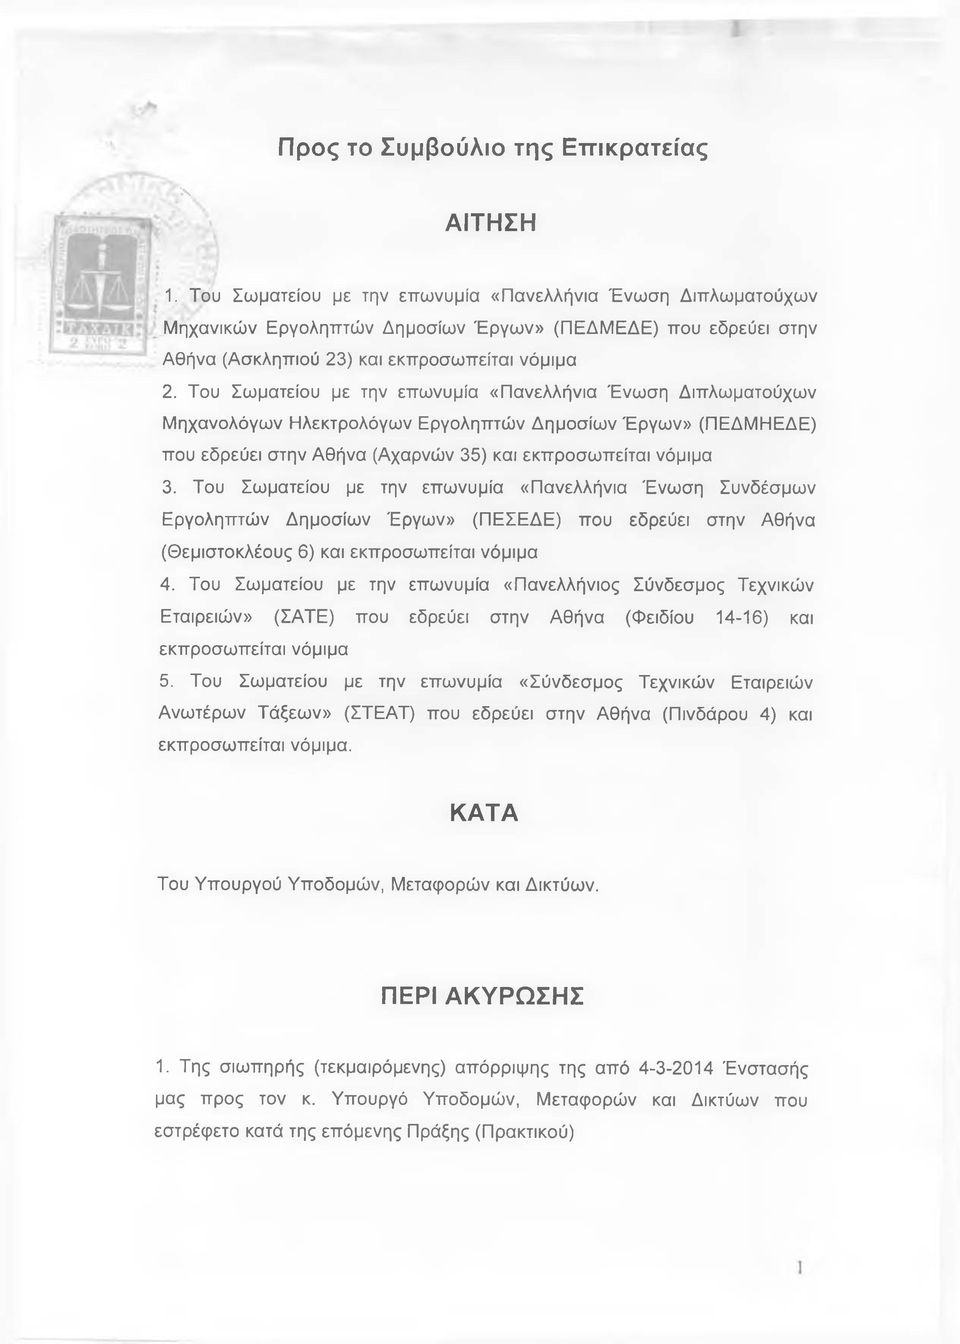 Του Σωματείου με την επωνυμία «Πανελλήνια Ένωση Διπλωματούχων Μηχανολόγων Ηλεκτρολόγων Εργοληπτών Δημοσίων Έργων» (ΠΕΔΜΗΕΔΕ) που εδρεύει στην Αθήνα (Αχαρνών 35) και εκπροσω πείται νόμιμα 3.